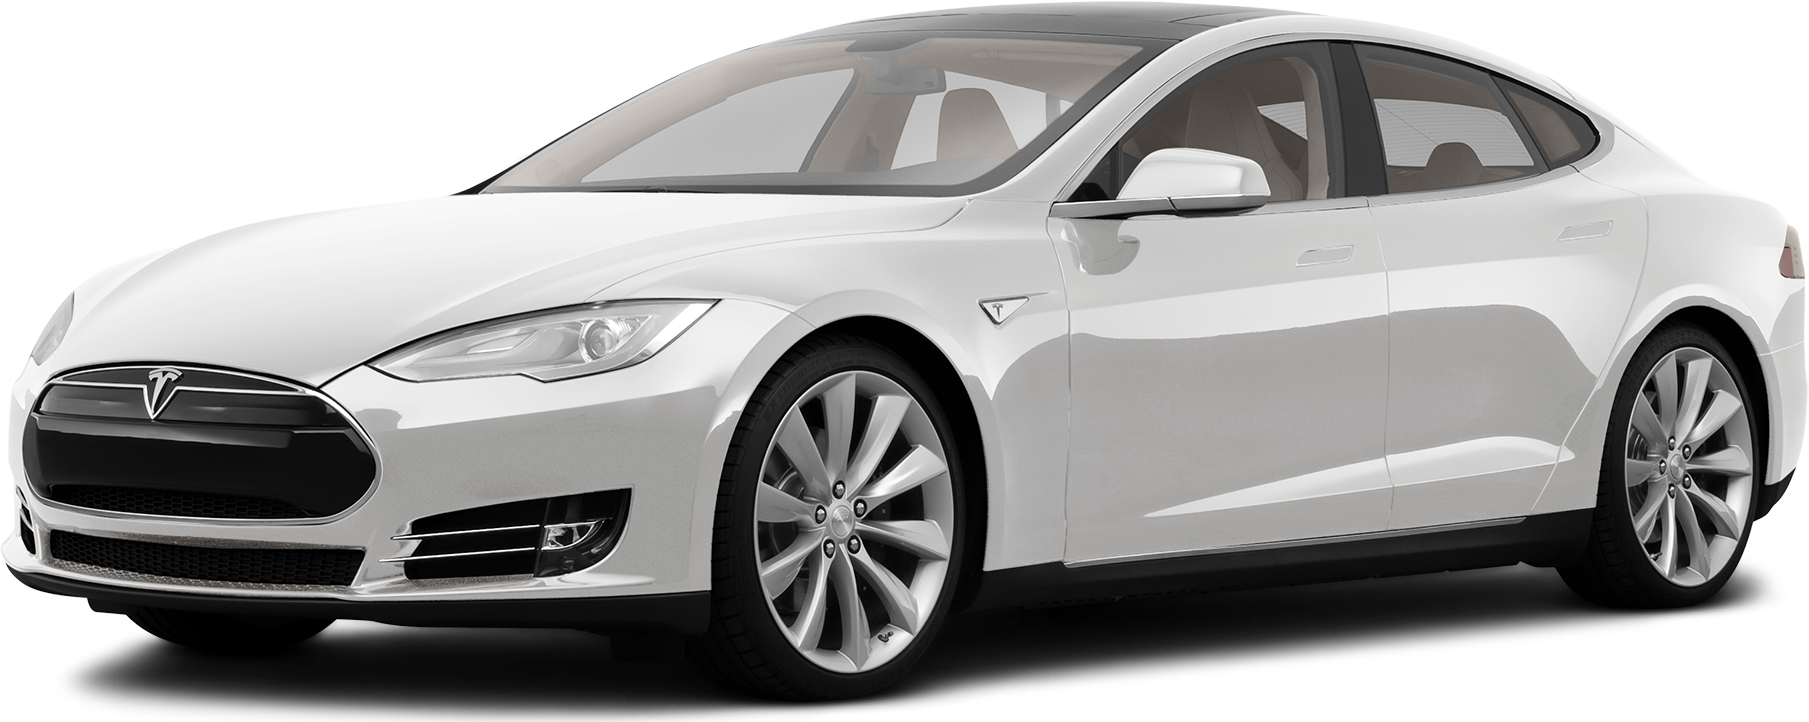 Tesla Modell S: Bilder, Preise und technische Daten (2013) @